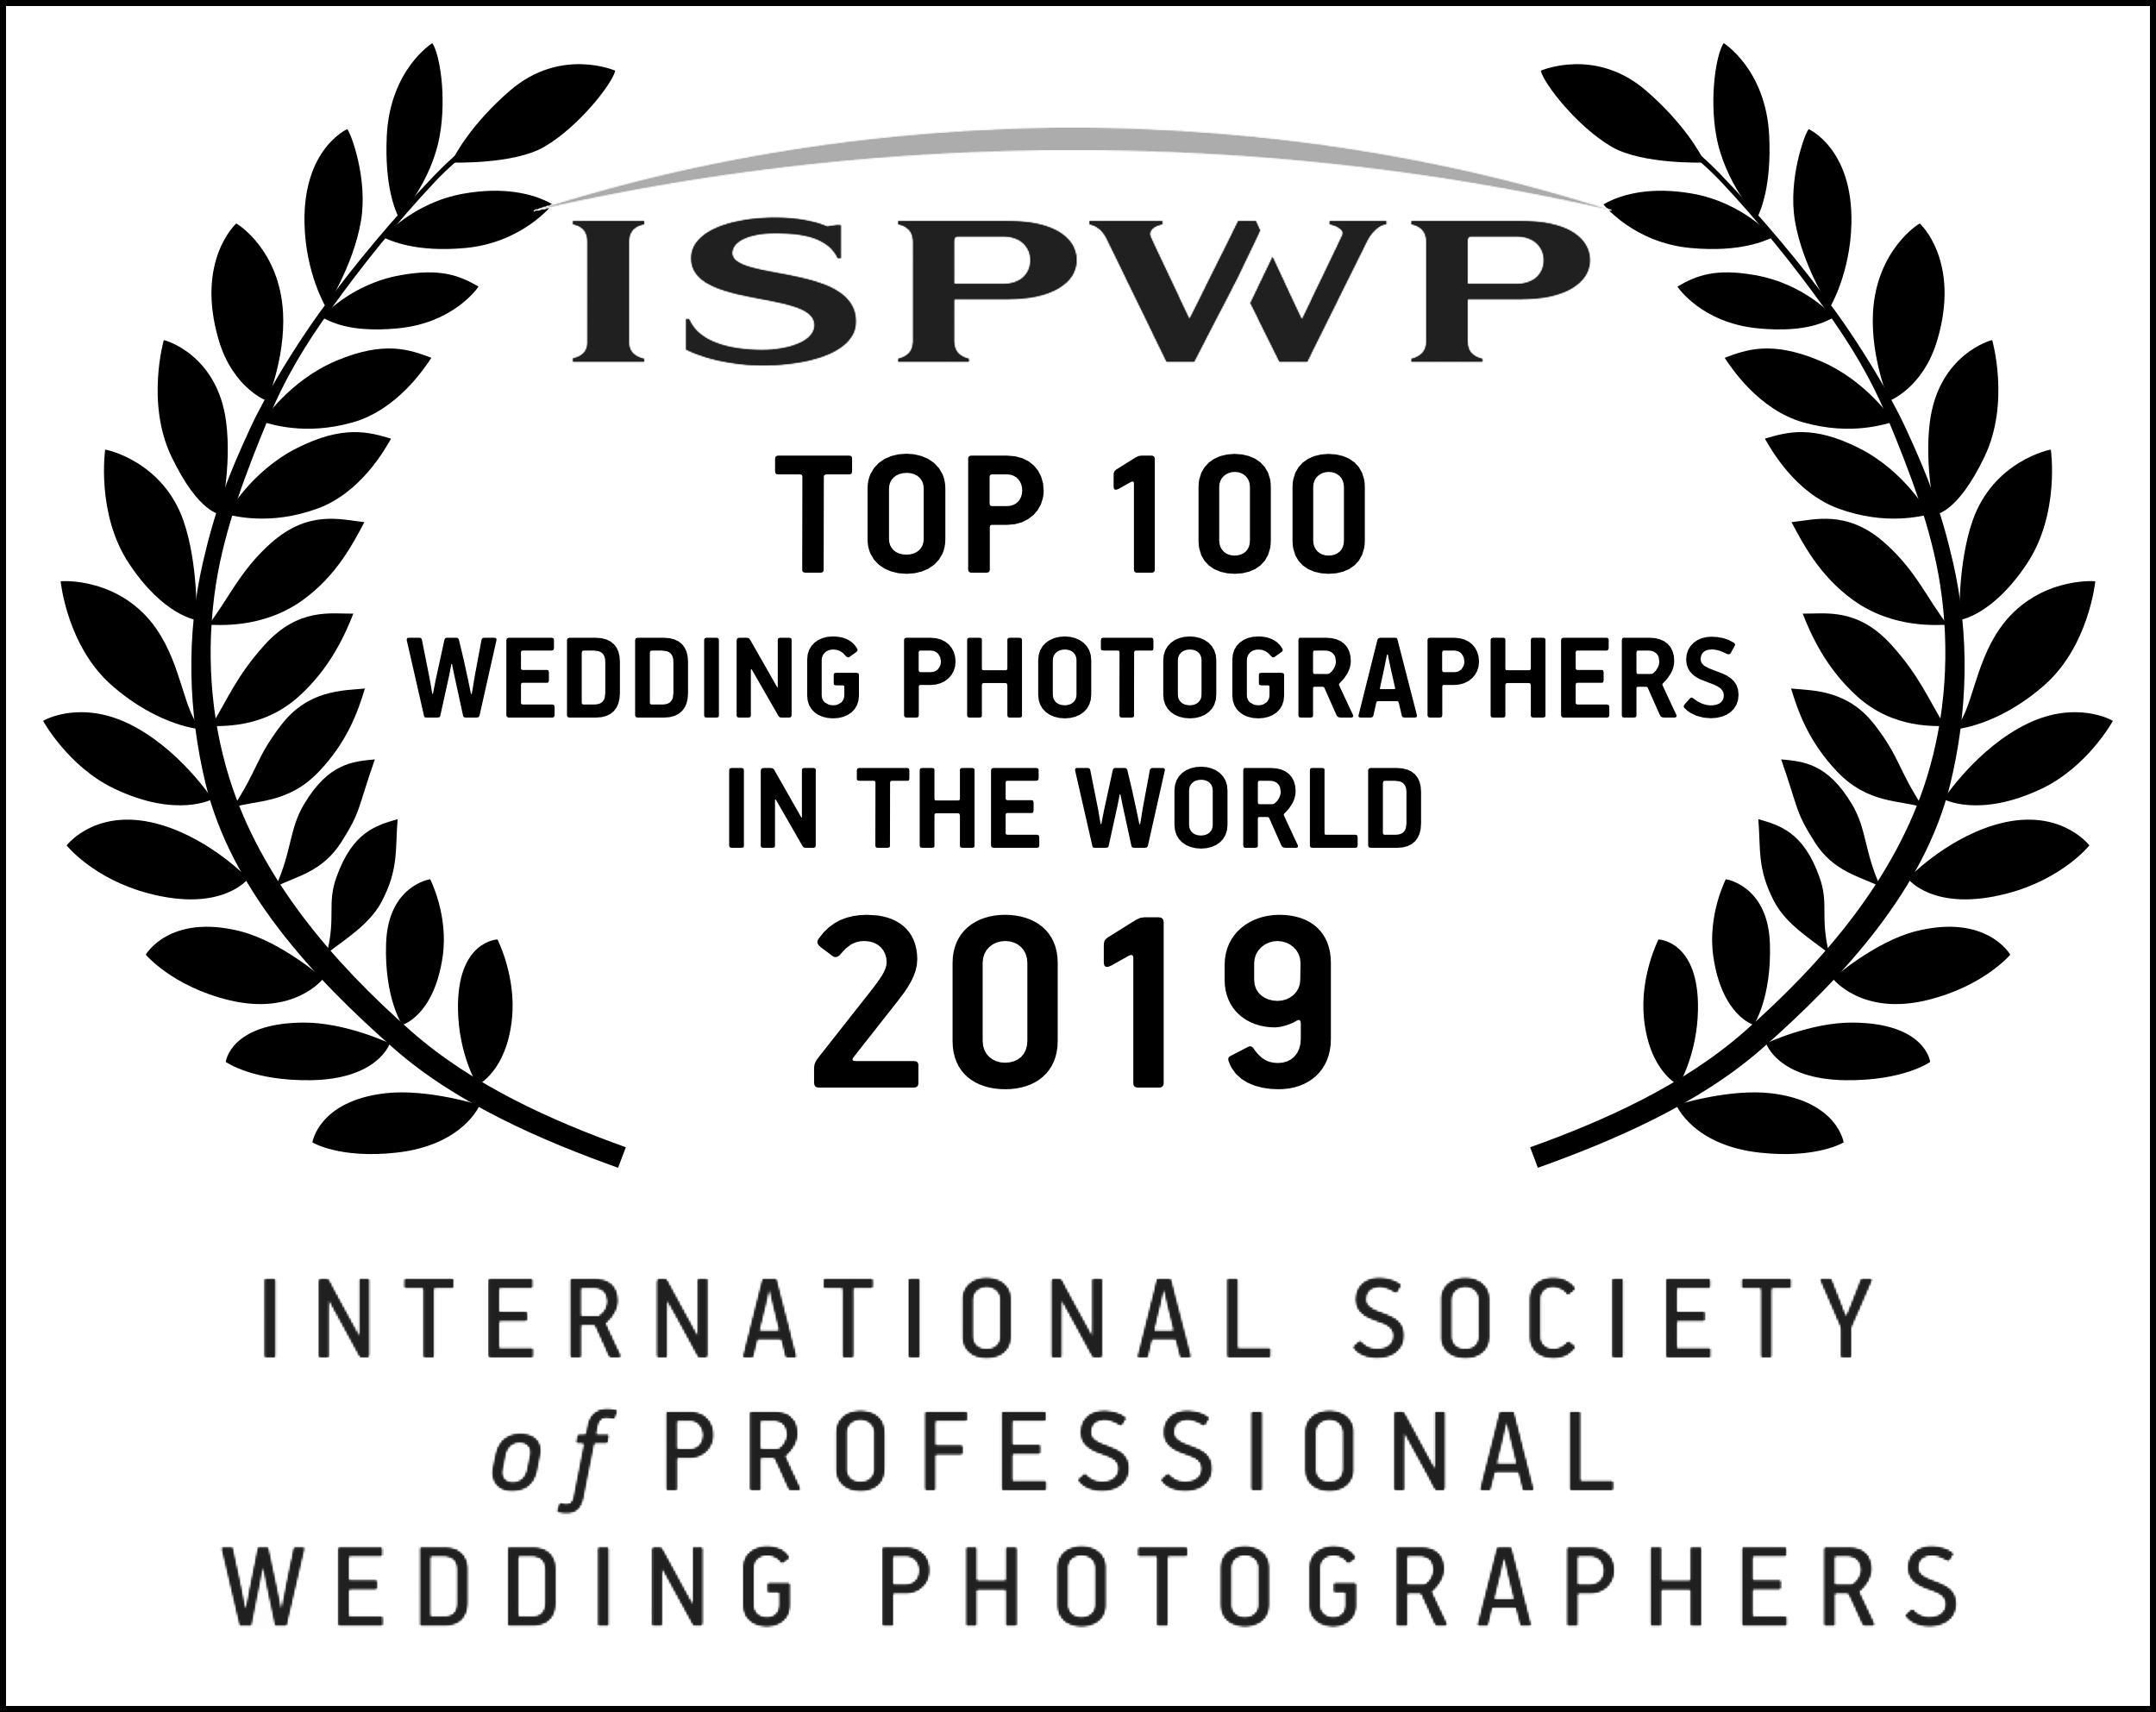 Pedro Álvarez Fotografía entre los mejores fotógrafos de boda del mundo